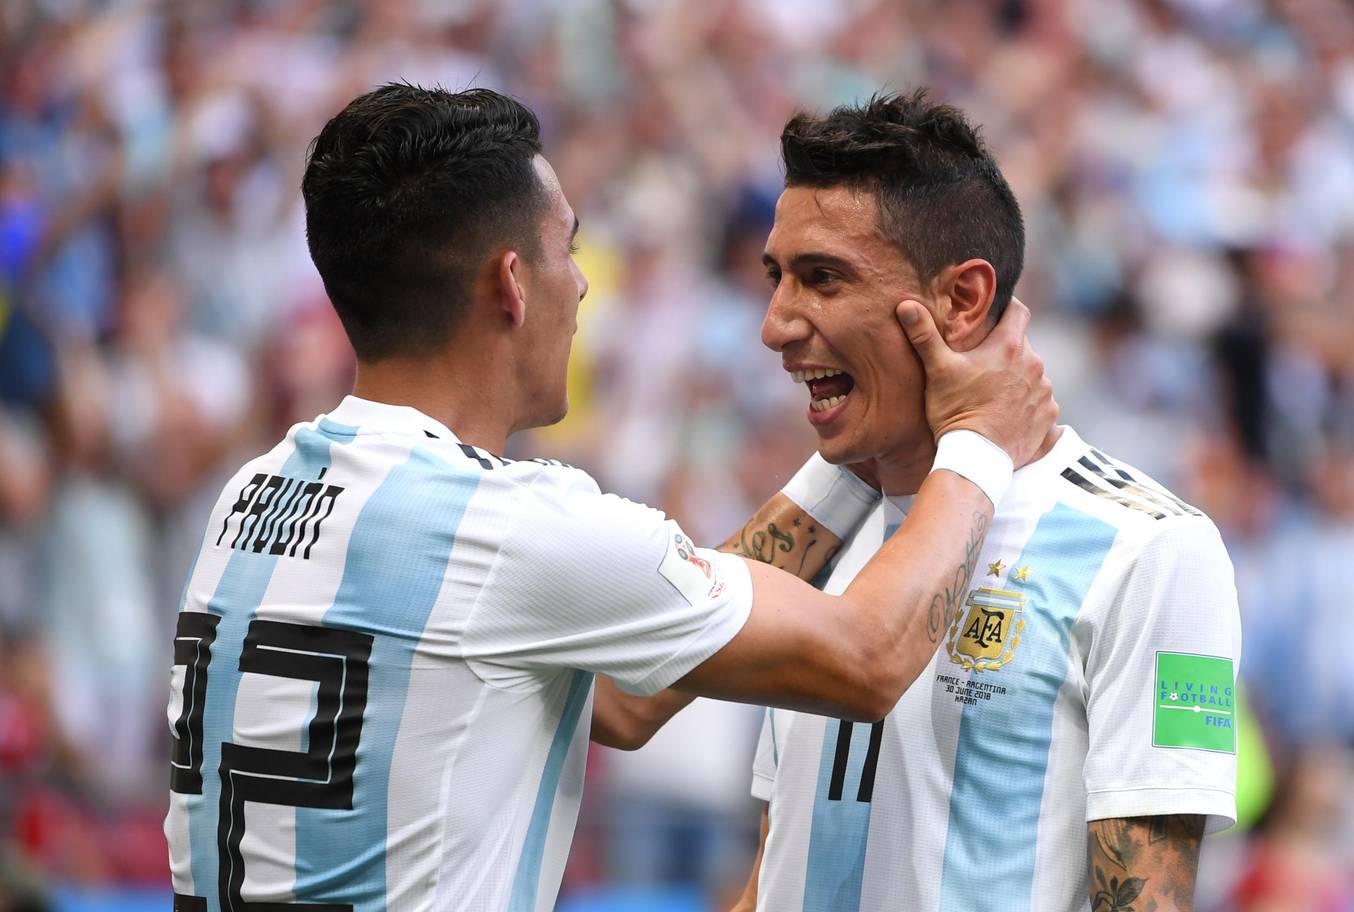 Chấm điểm Argentina: Thảm họa hàng thủ, Messi lạc lõng - Bóng Đá